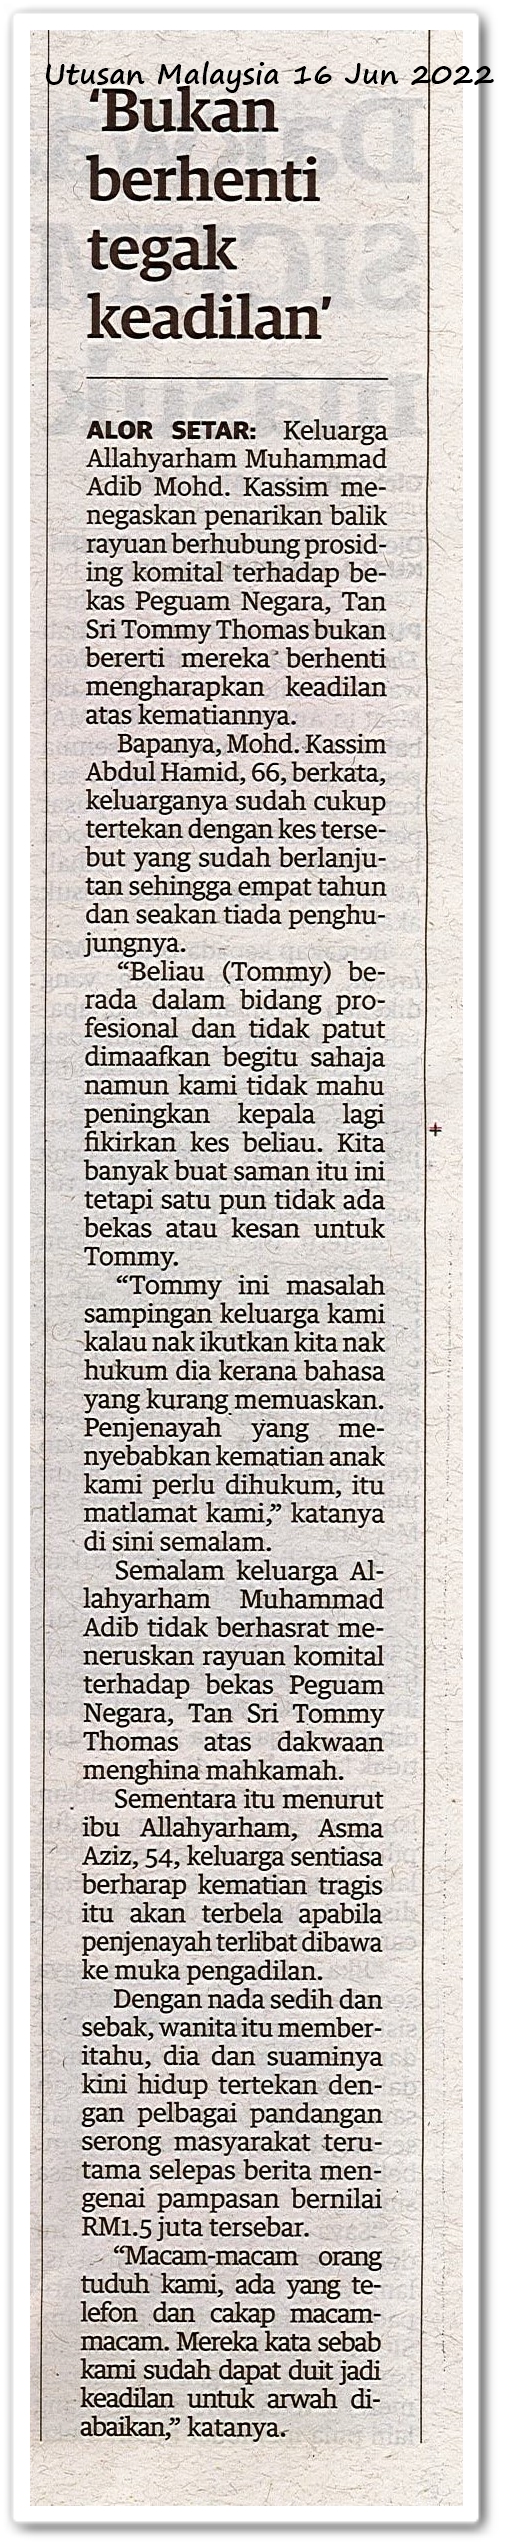 'Bukan berhenti tegak keadilan' - Keratan akhbar Utusan Malaysia 16 Jun 2022